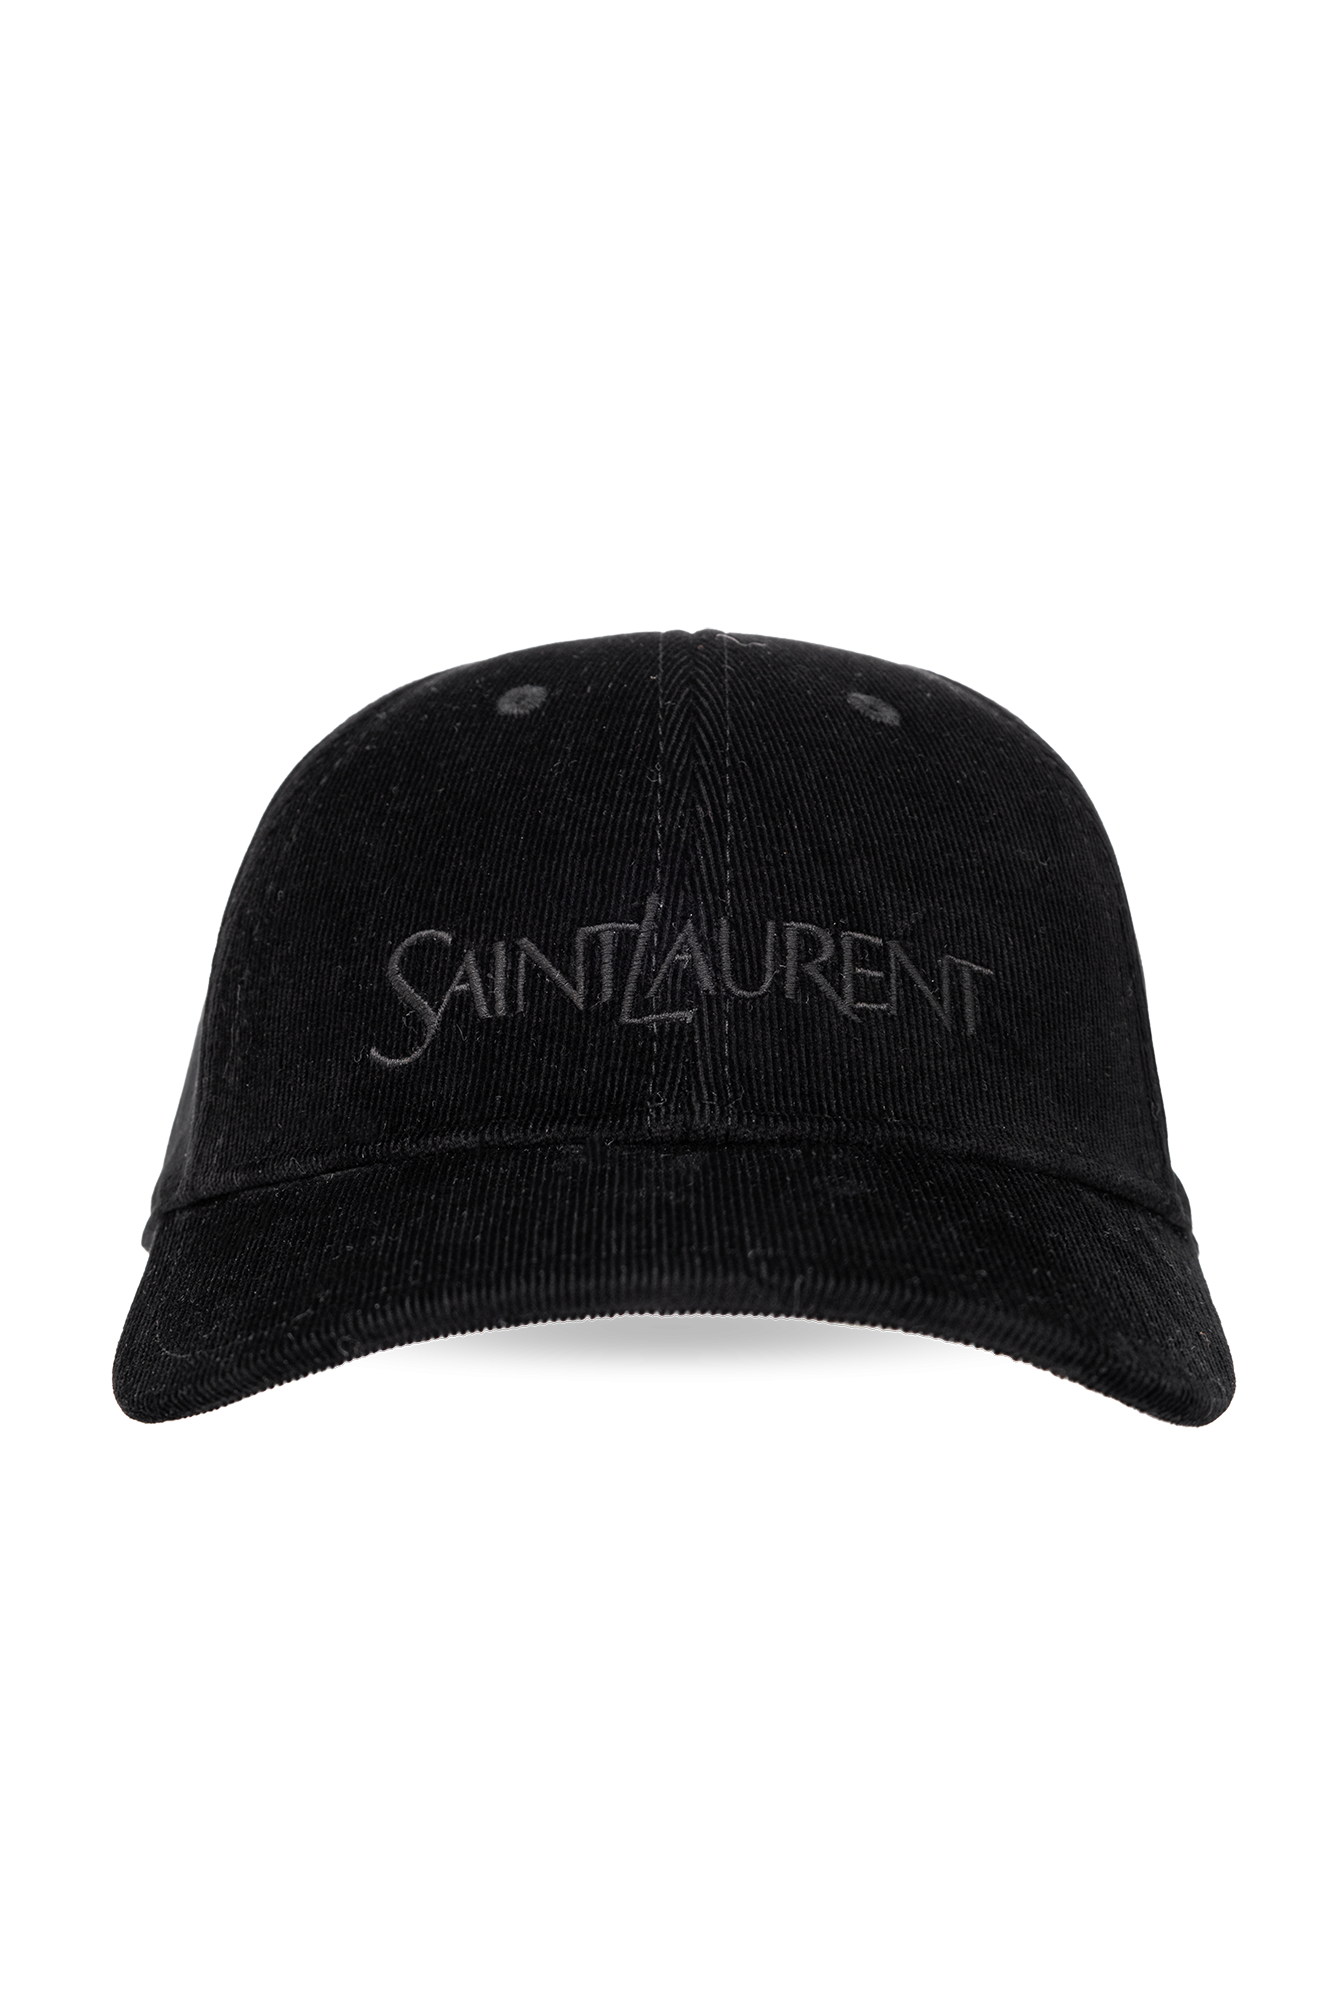 saint laurent hat